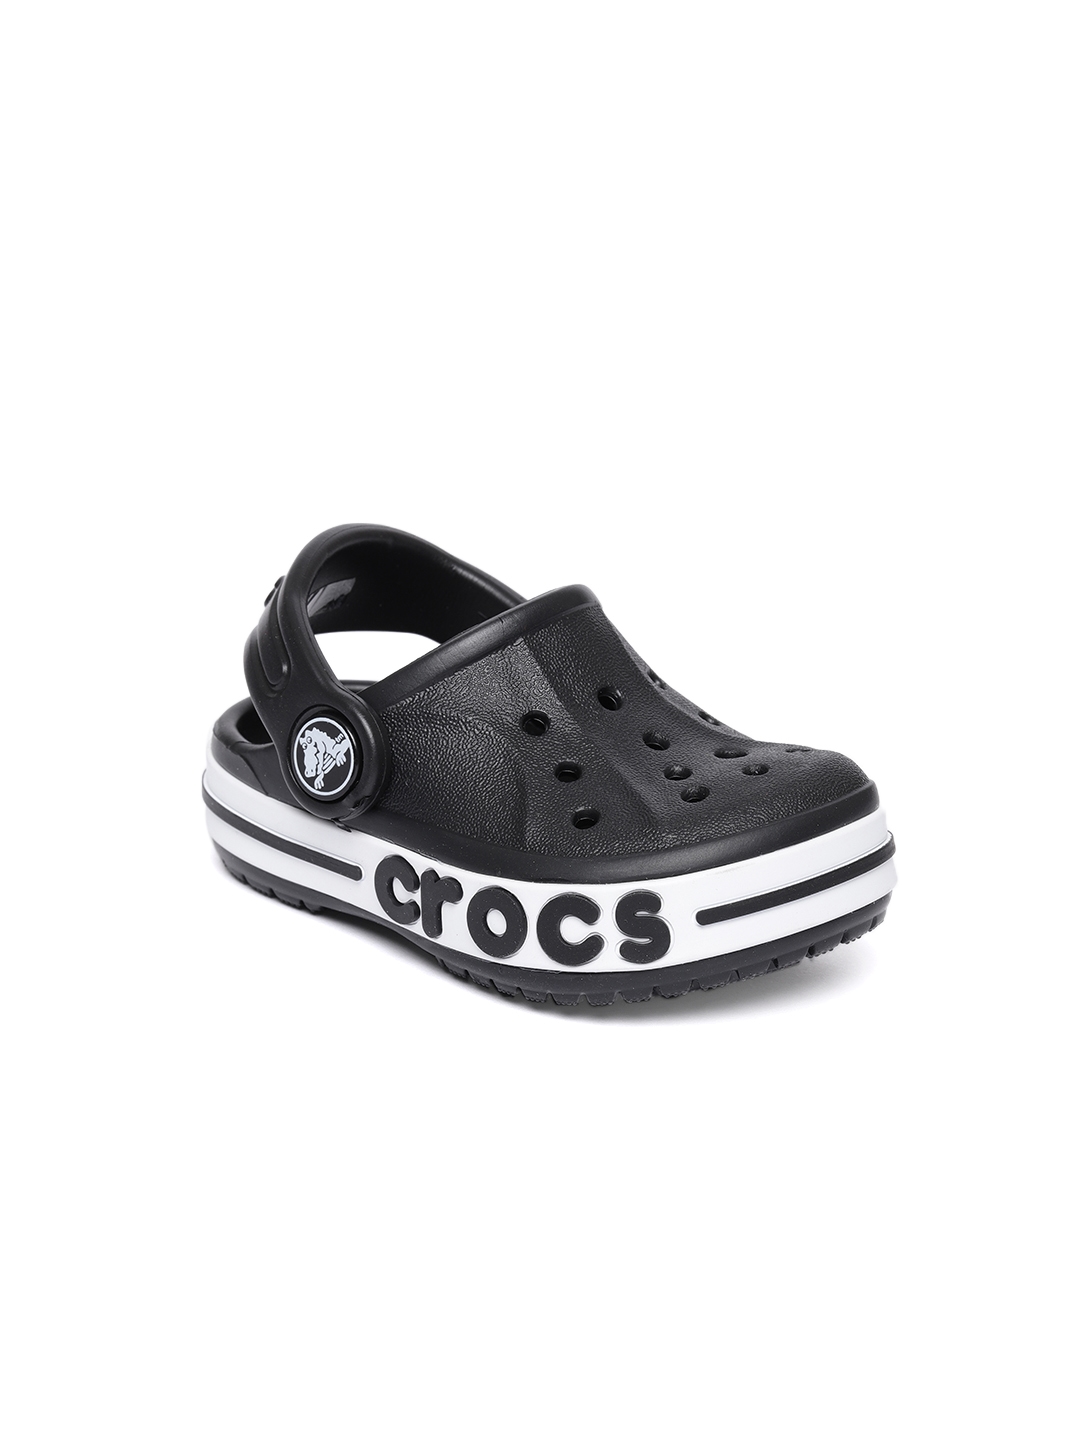 Crocs Boys Black Solid Clogs